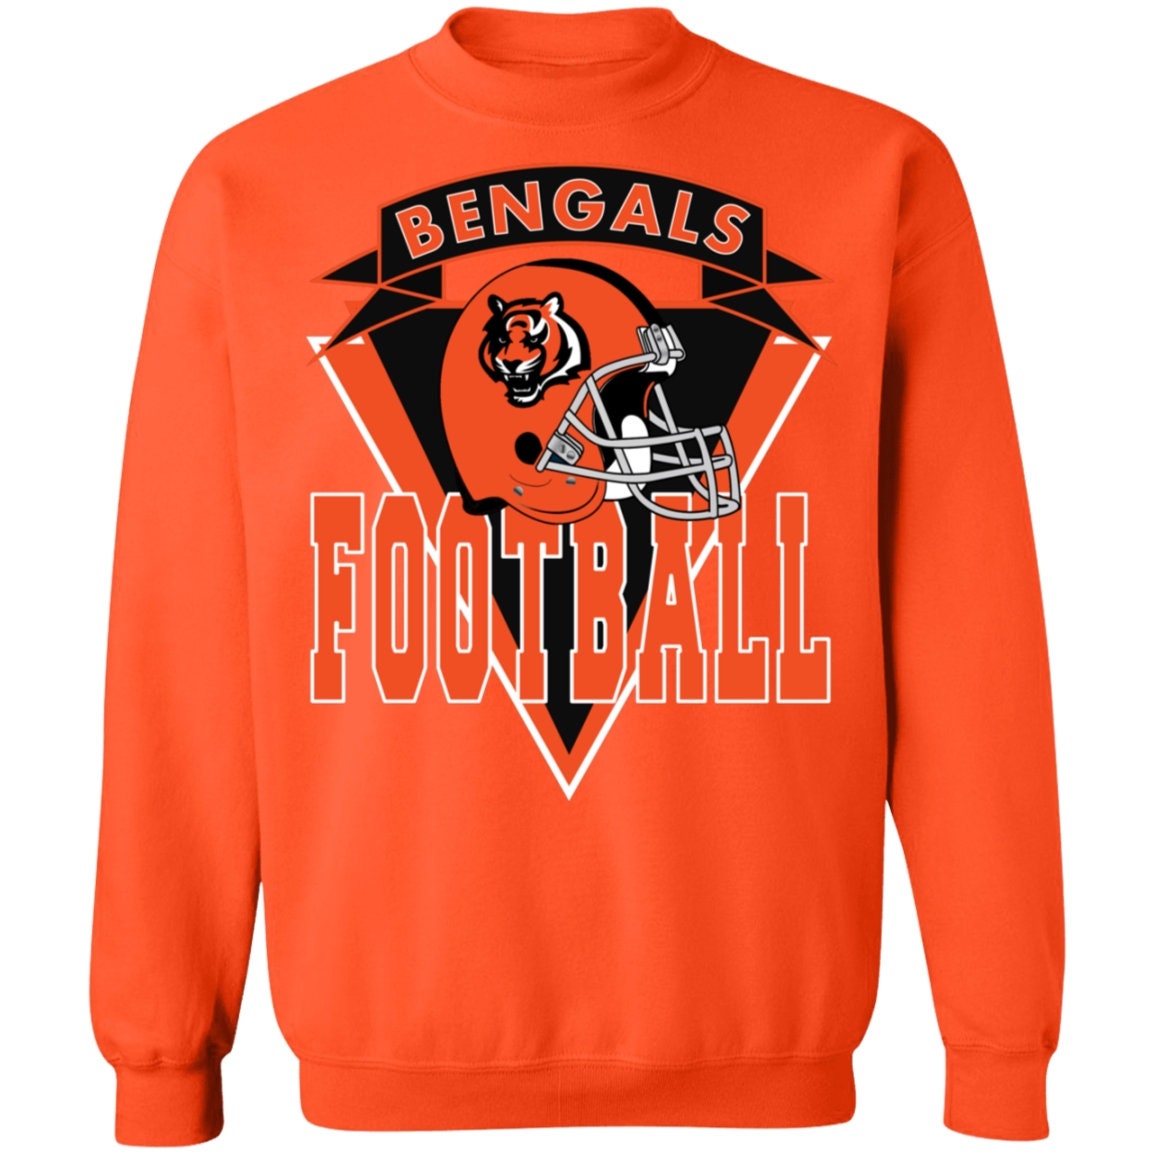 Cincinnati Bengals Sweatshirt | Etsy